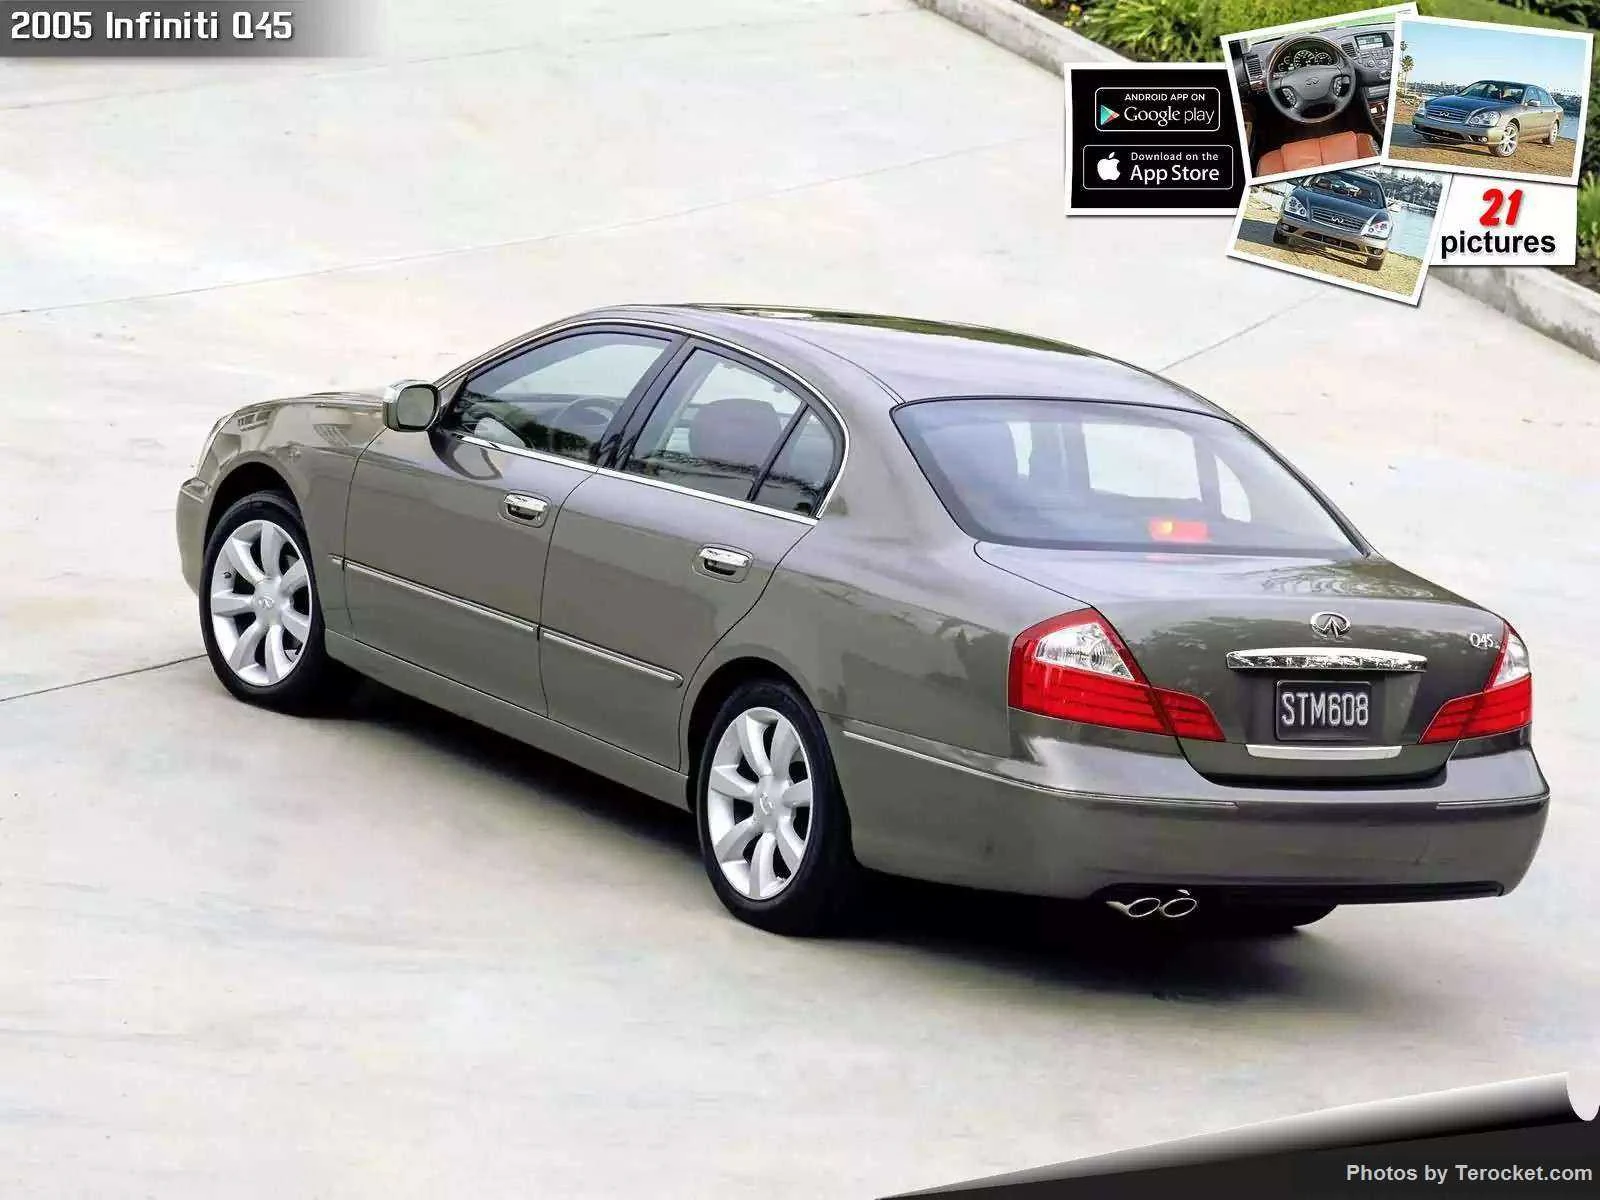 Hình ảnh xe ô tô Infiniti Q45 2005 & nội ngoại thất